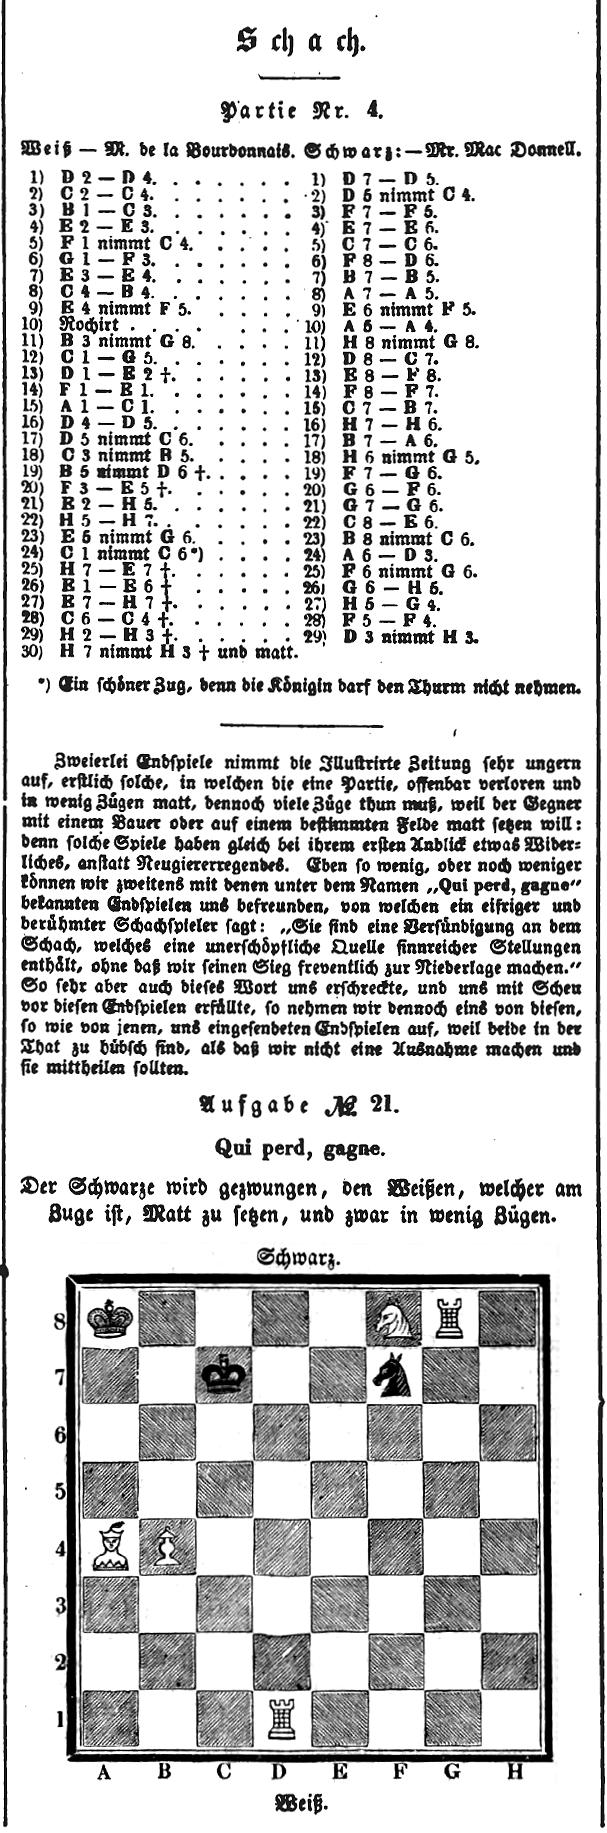 1844.06.01-01 Leipzig Illustrirte Zeitung.jpg